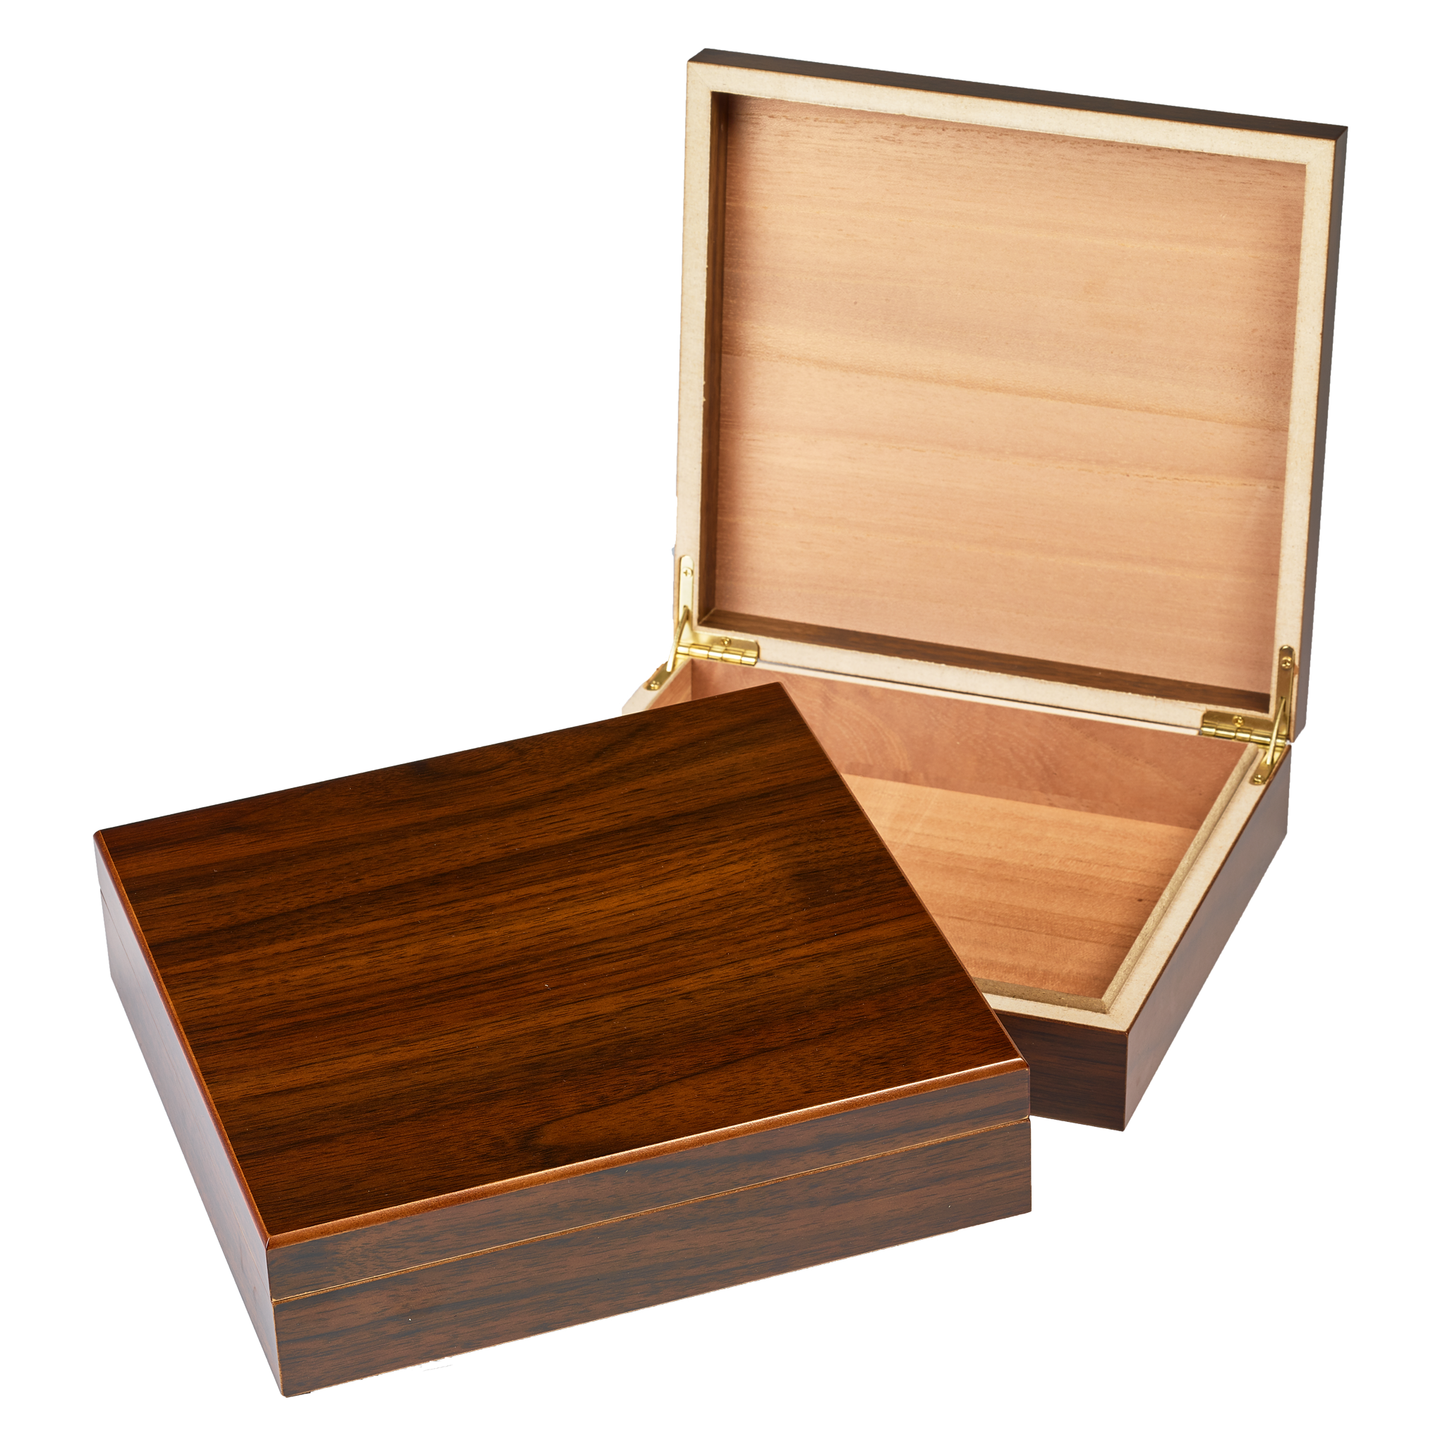 Walnut - Medium Wood Box